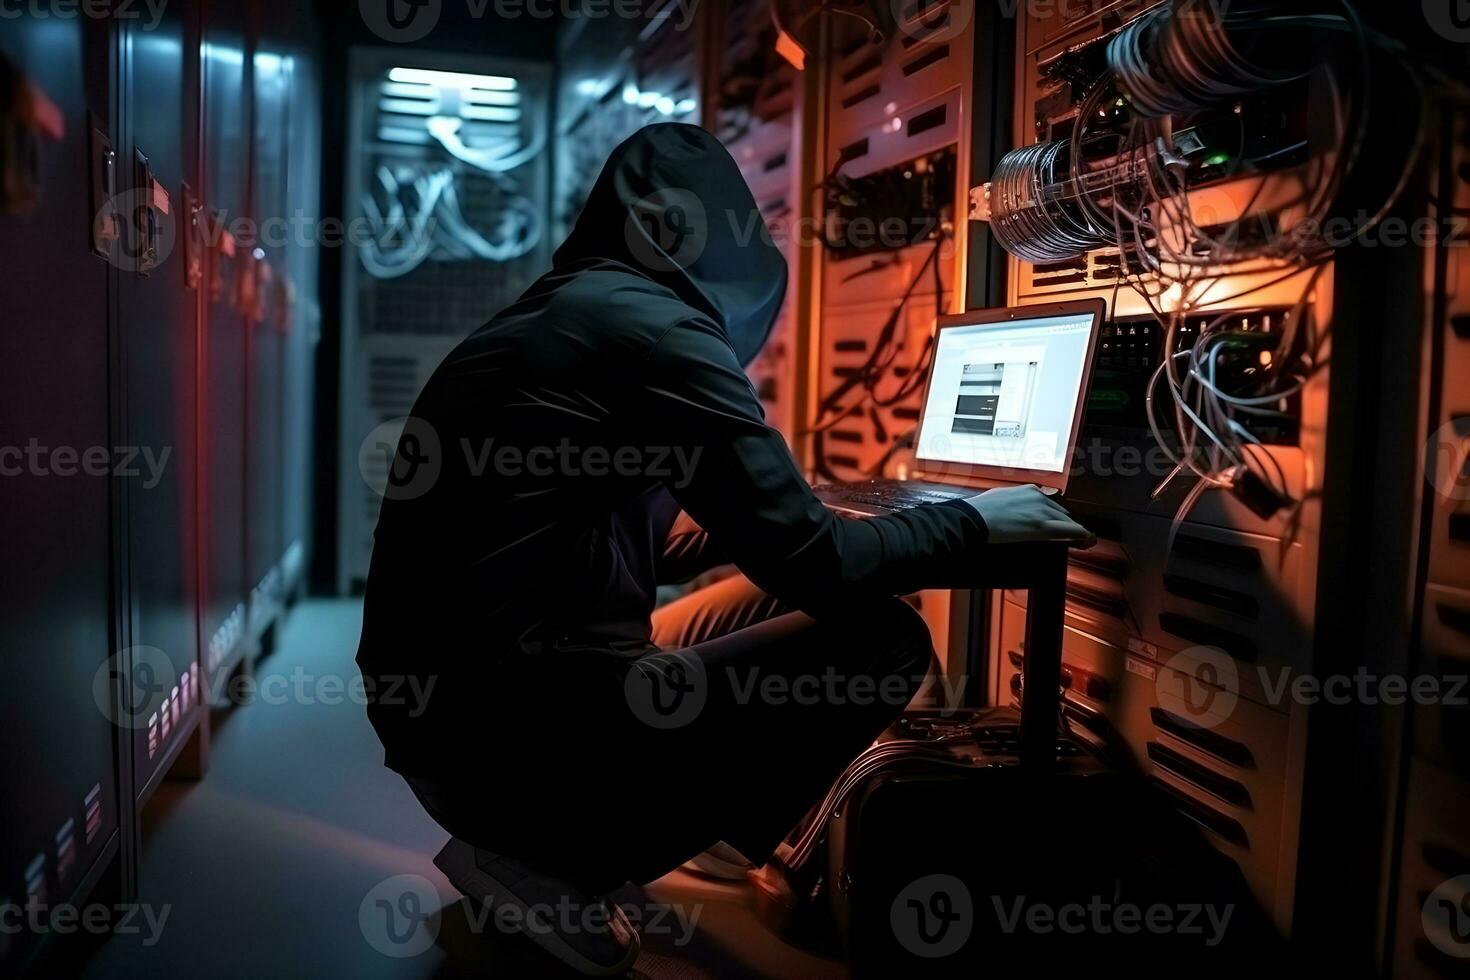 Ataque De Hackers à Estátua Da Justiça De Dama Ilustração Stock -  Ilustração de computador, troiano: 227573345